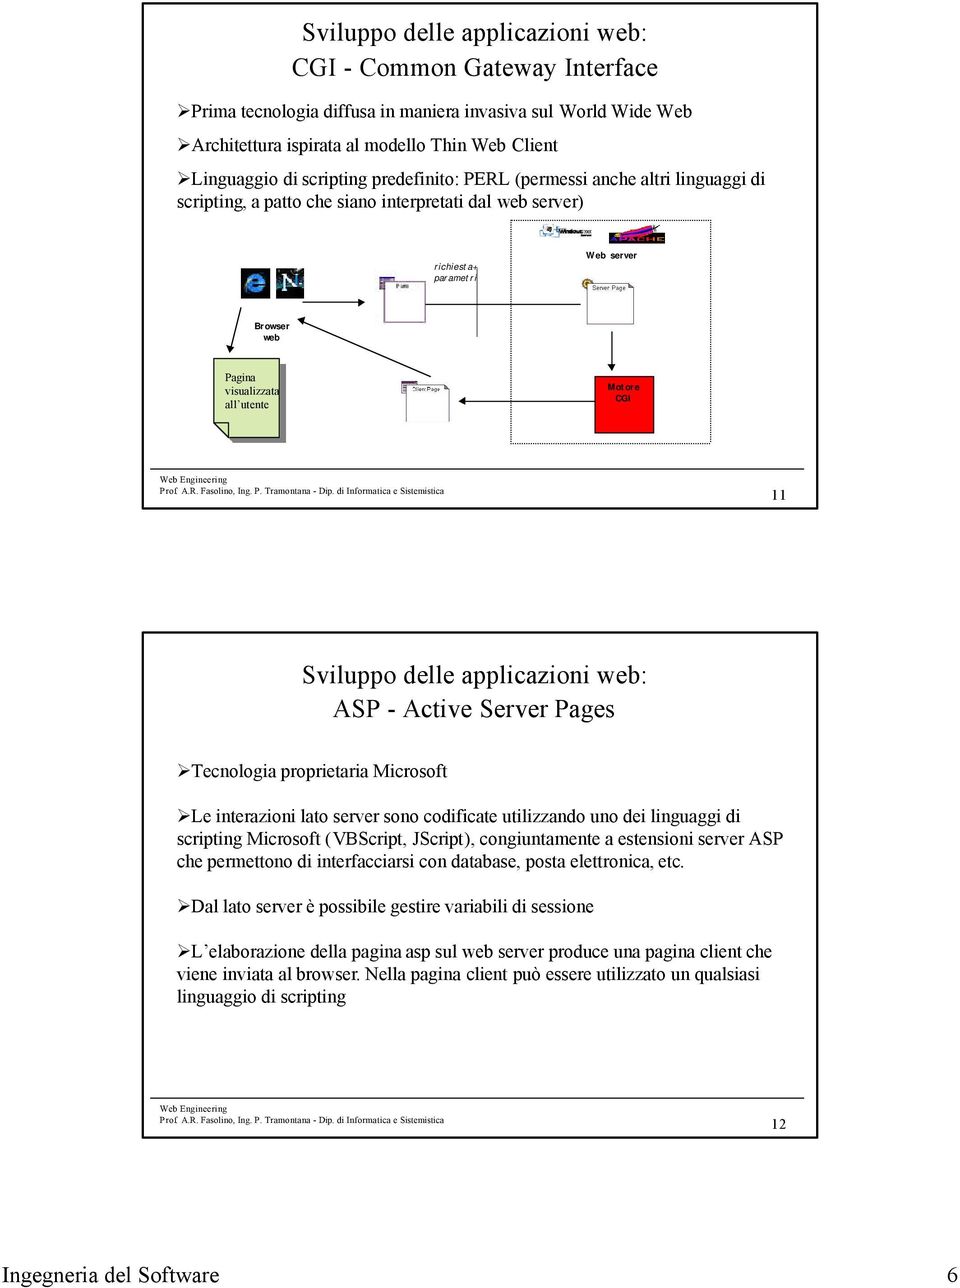 Motore CGI 11 Sviluppo delle applicazioni web: ASP - Active Server Pages Tecnologia proprietaria Microsoft Le interazioni lato server sono codificate utilizzando uno dei linguaggi di scripting